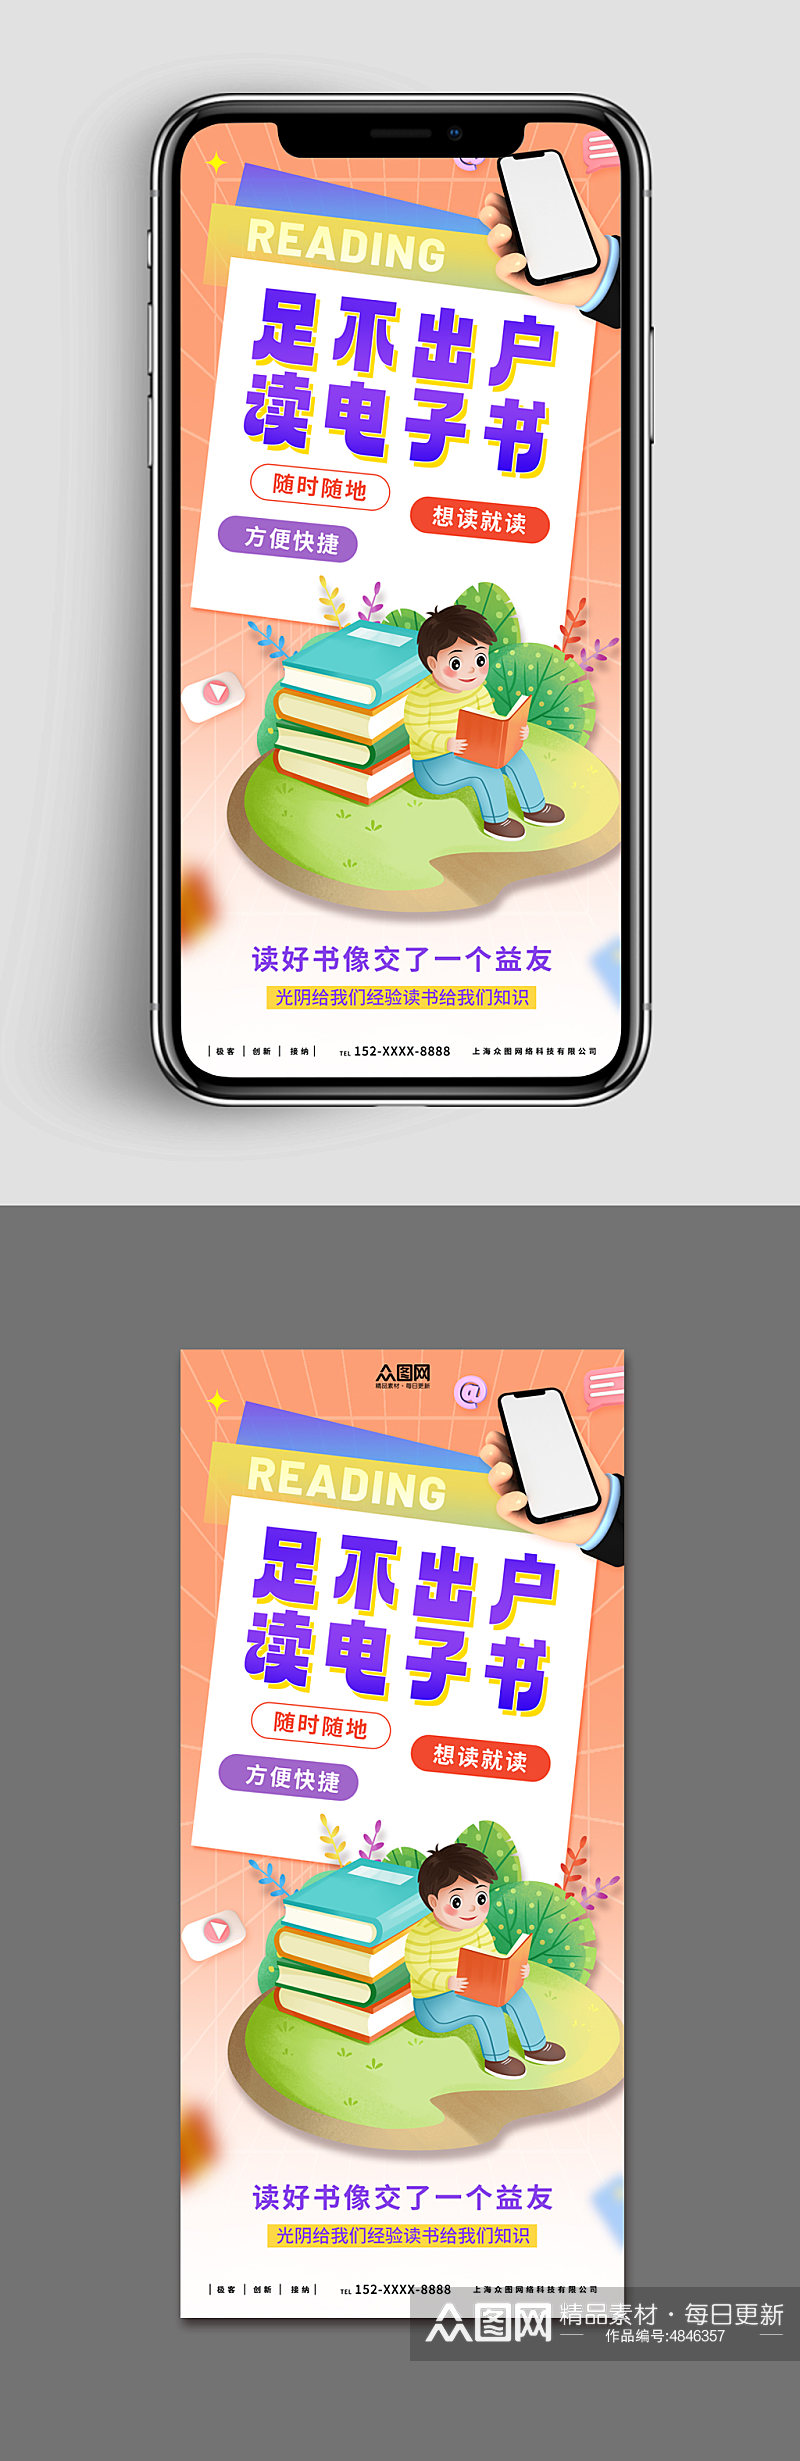 橙色新媒体手机海报线上电子书读书阅读好书素材